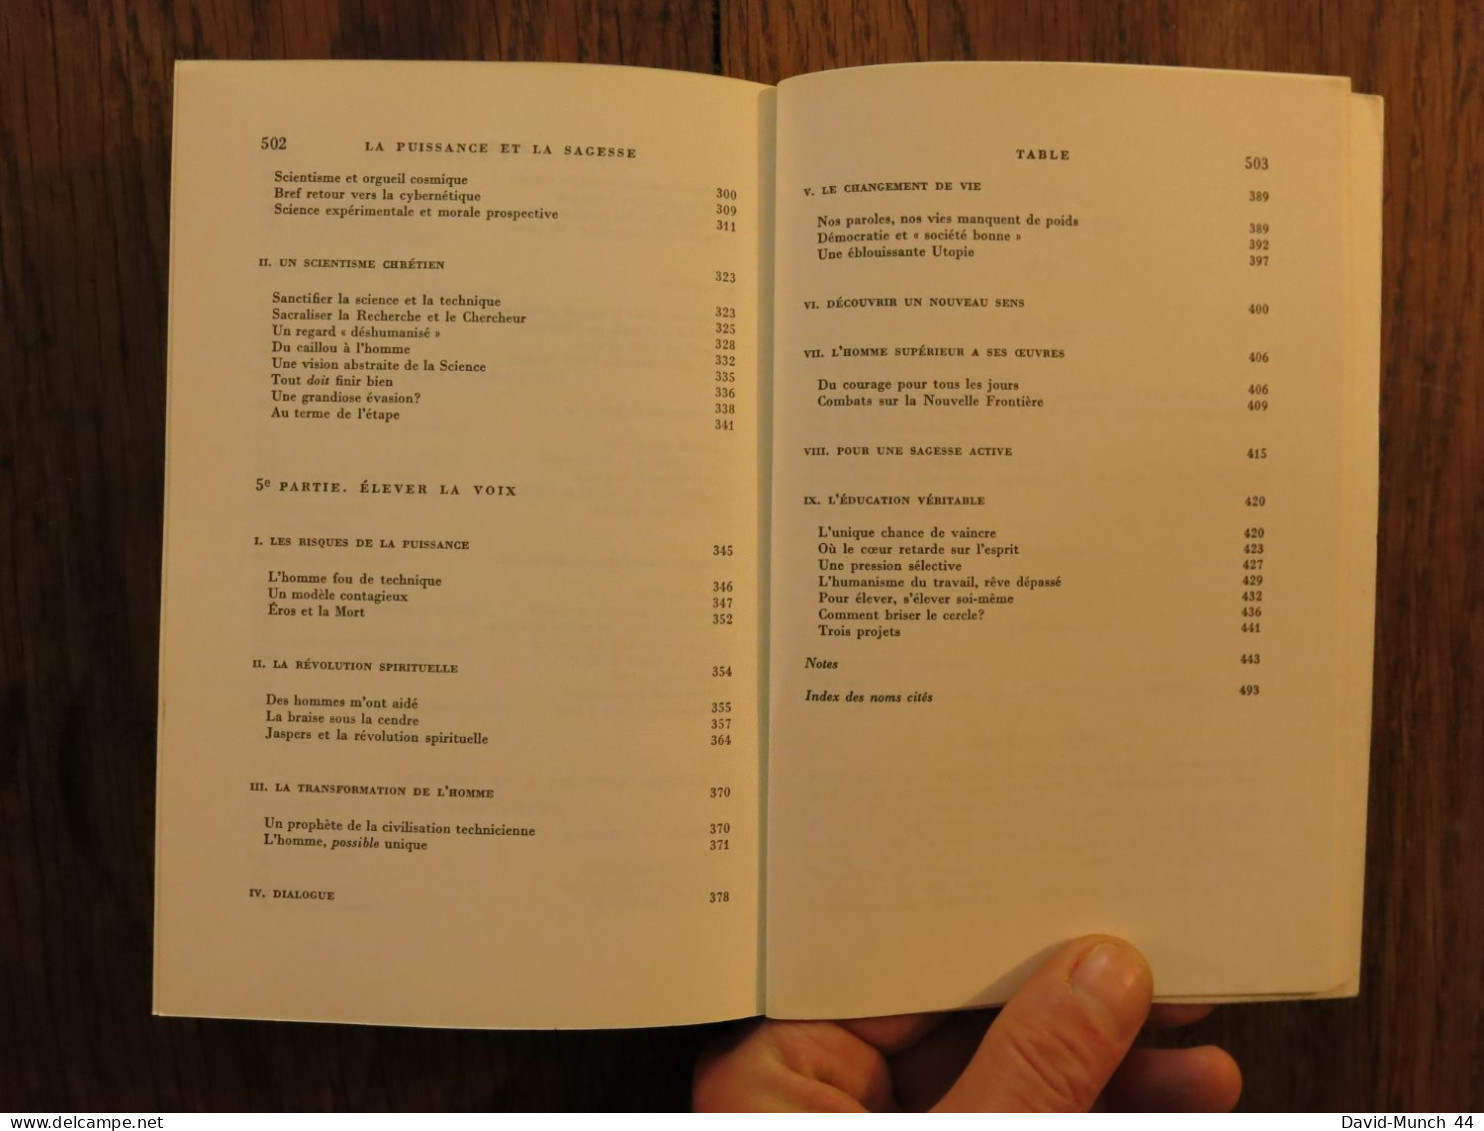 La Puissance et la sagesse de Georges Friedmann. Gallimard, Collection Tel. 1977